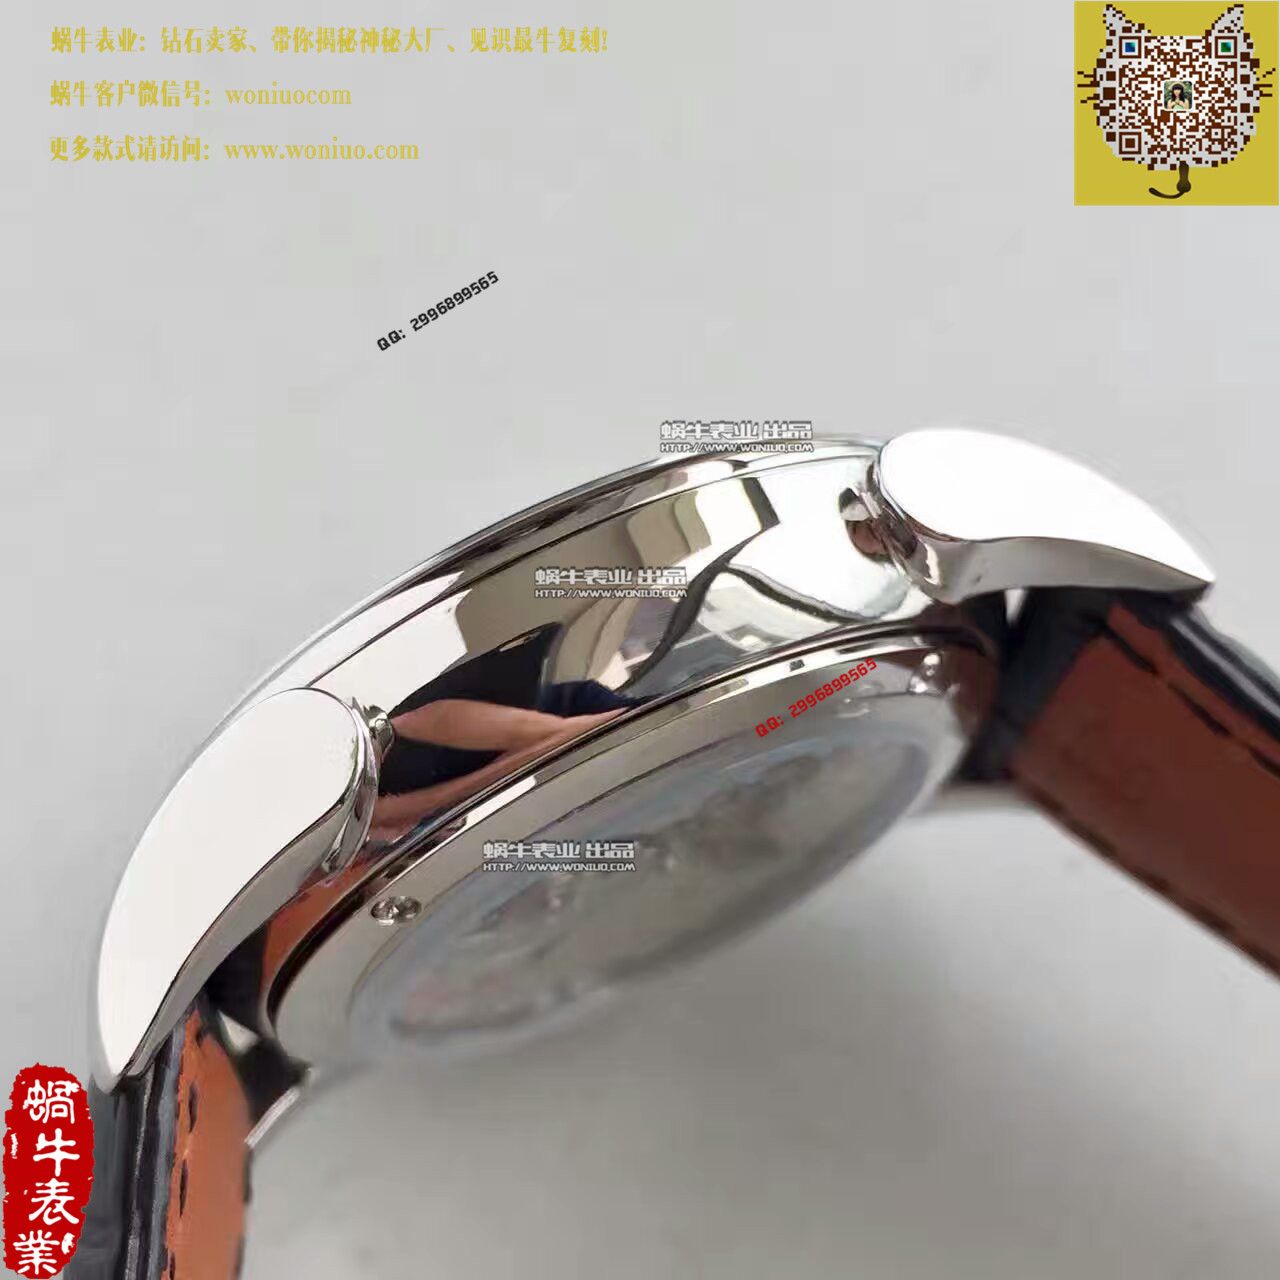 【一比一高仿手表】帕玛强尼Tonda系列特别版镂空限量腕表 / PM018